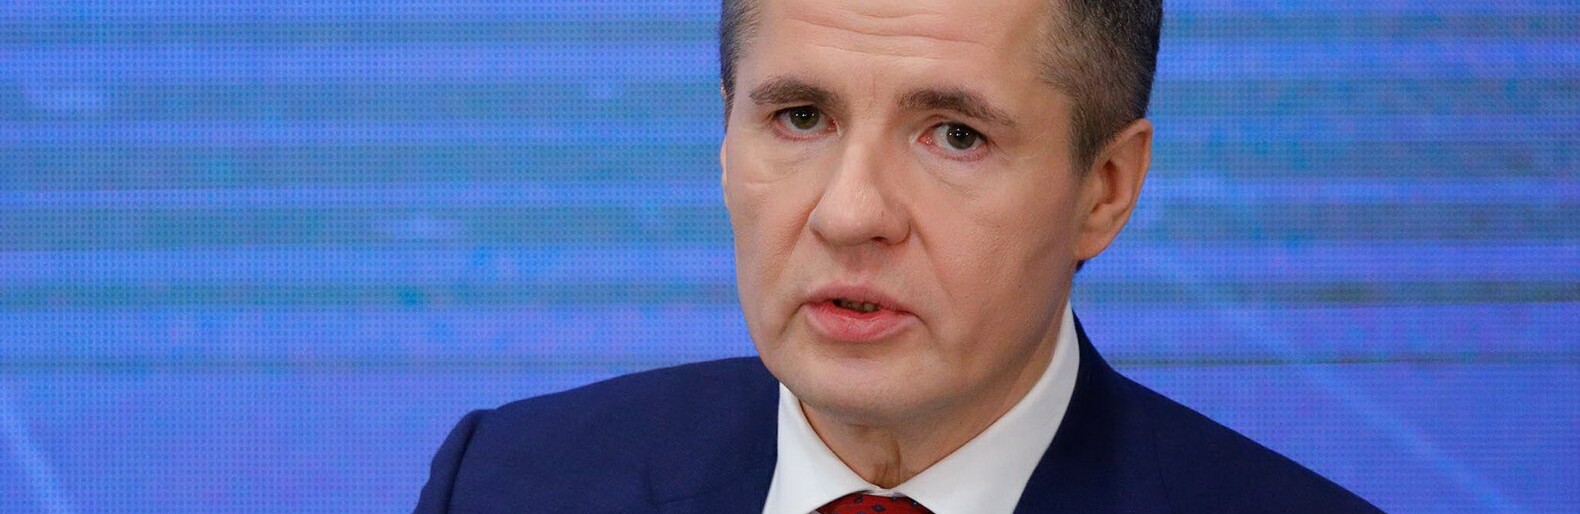 Белгородский губернатор Гладков попал под санкции США